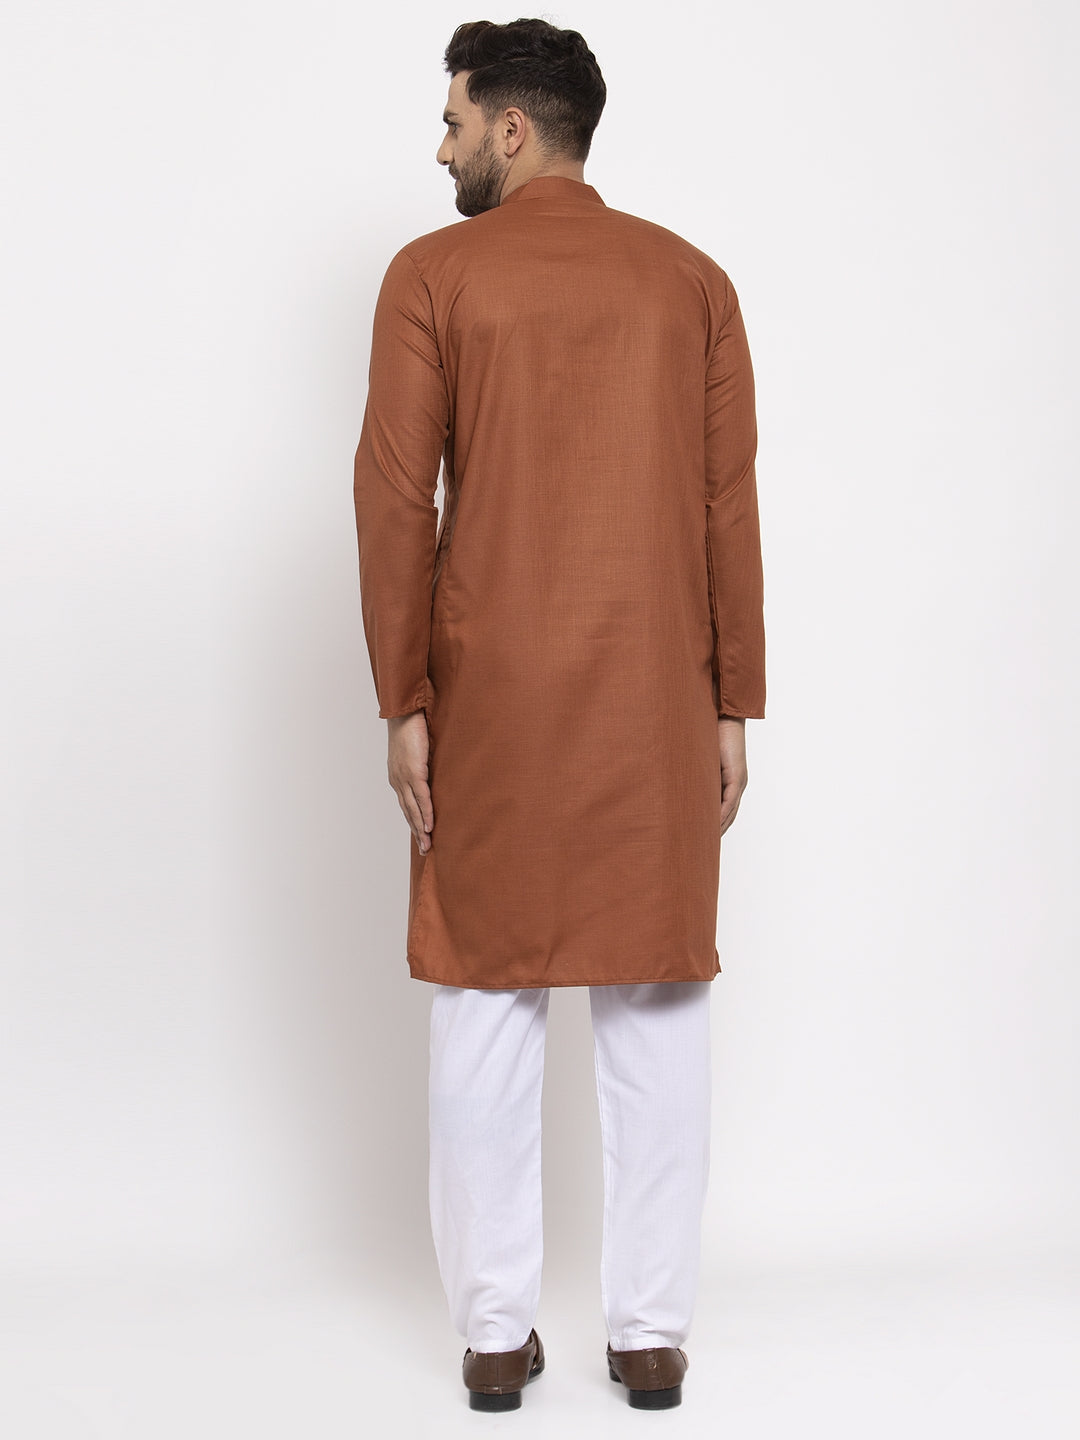 Men's Brown Cotton Solid Kurta Only ( KO 611 Brown ) - Virat Fashions